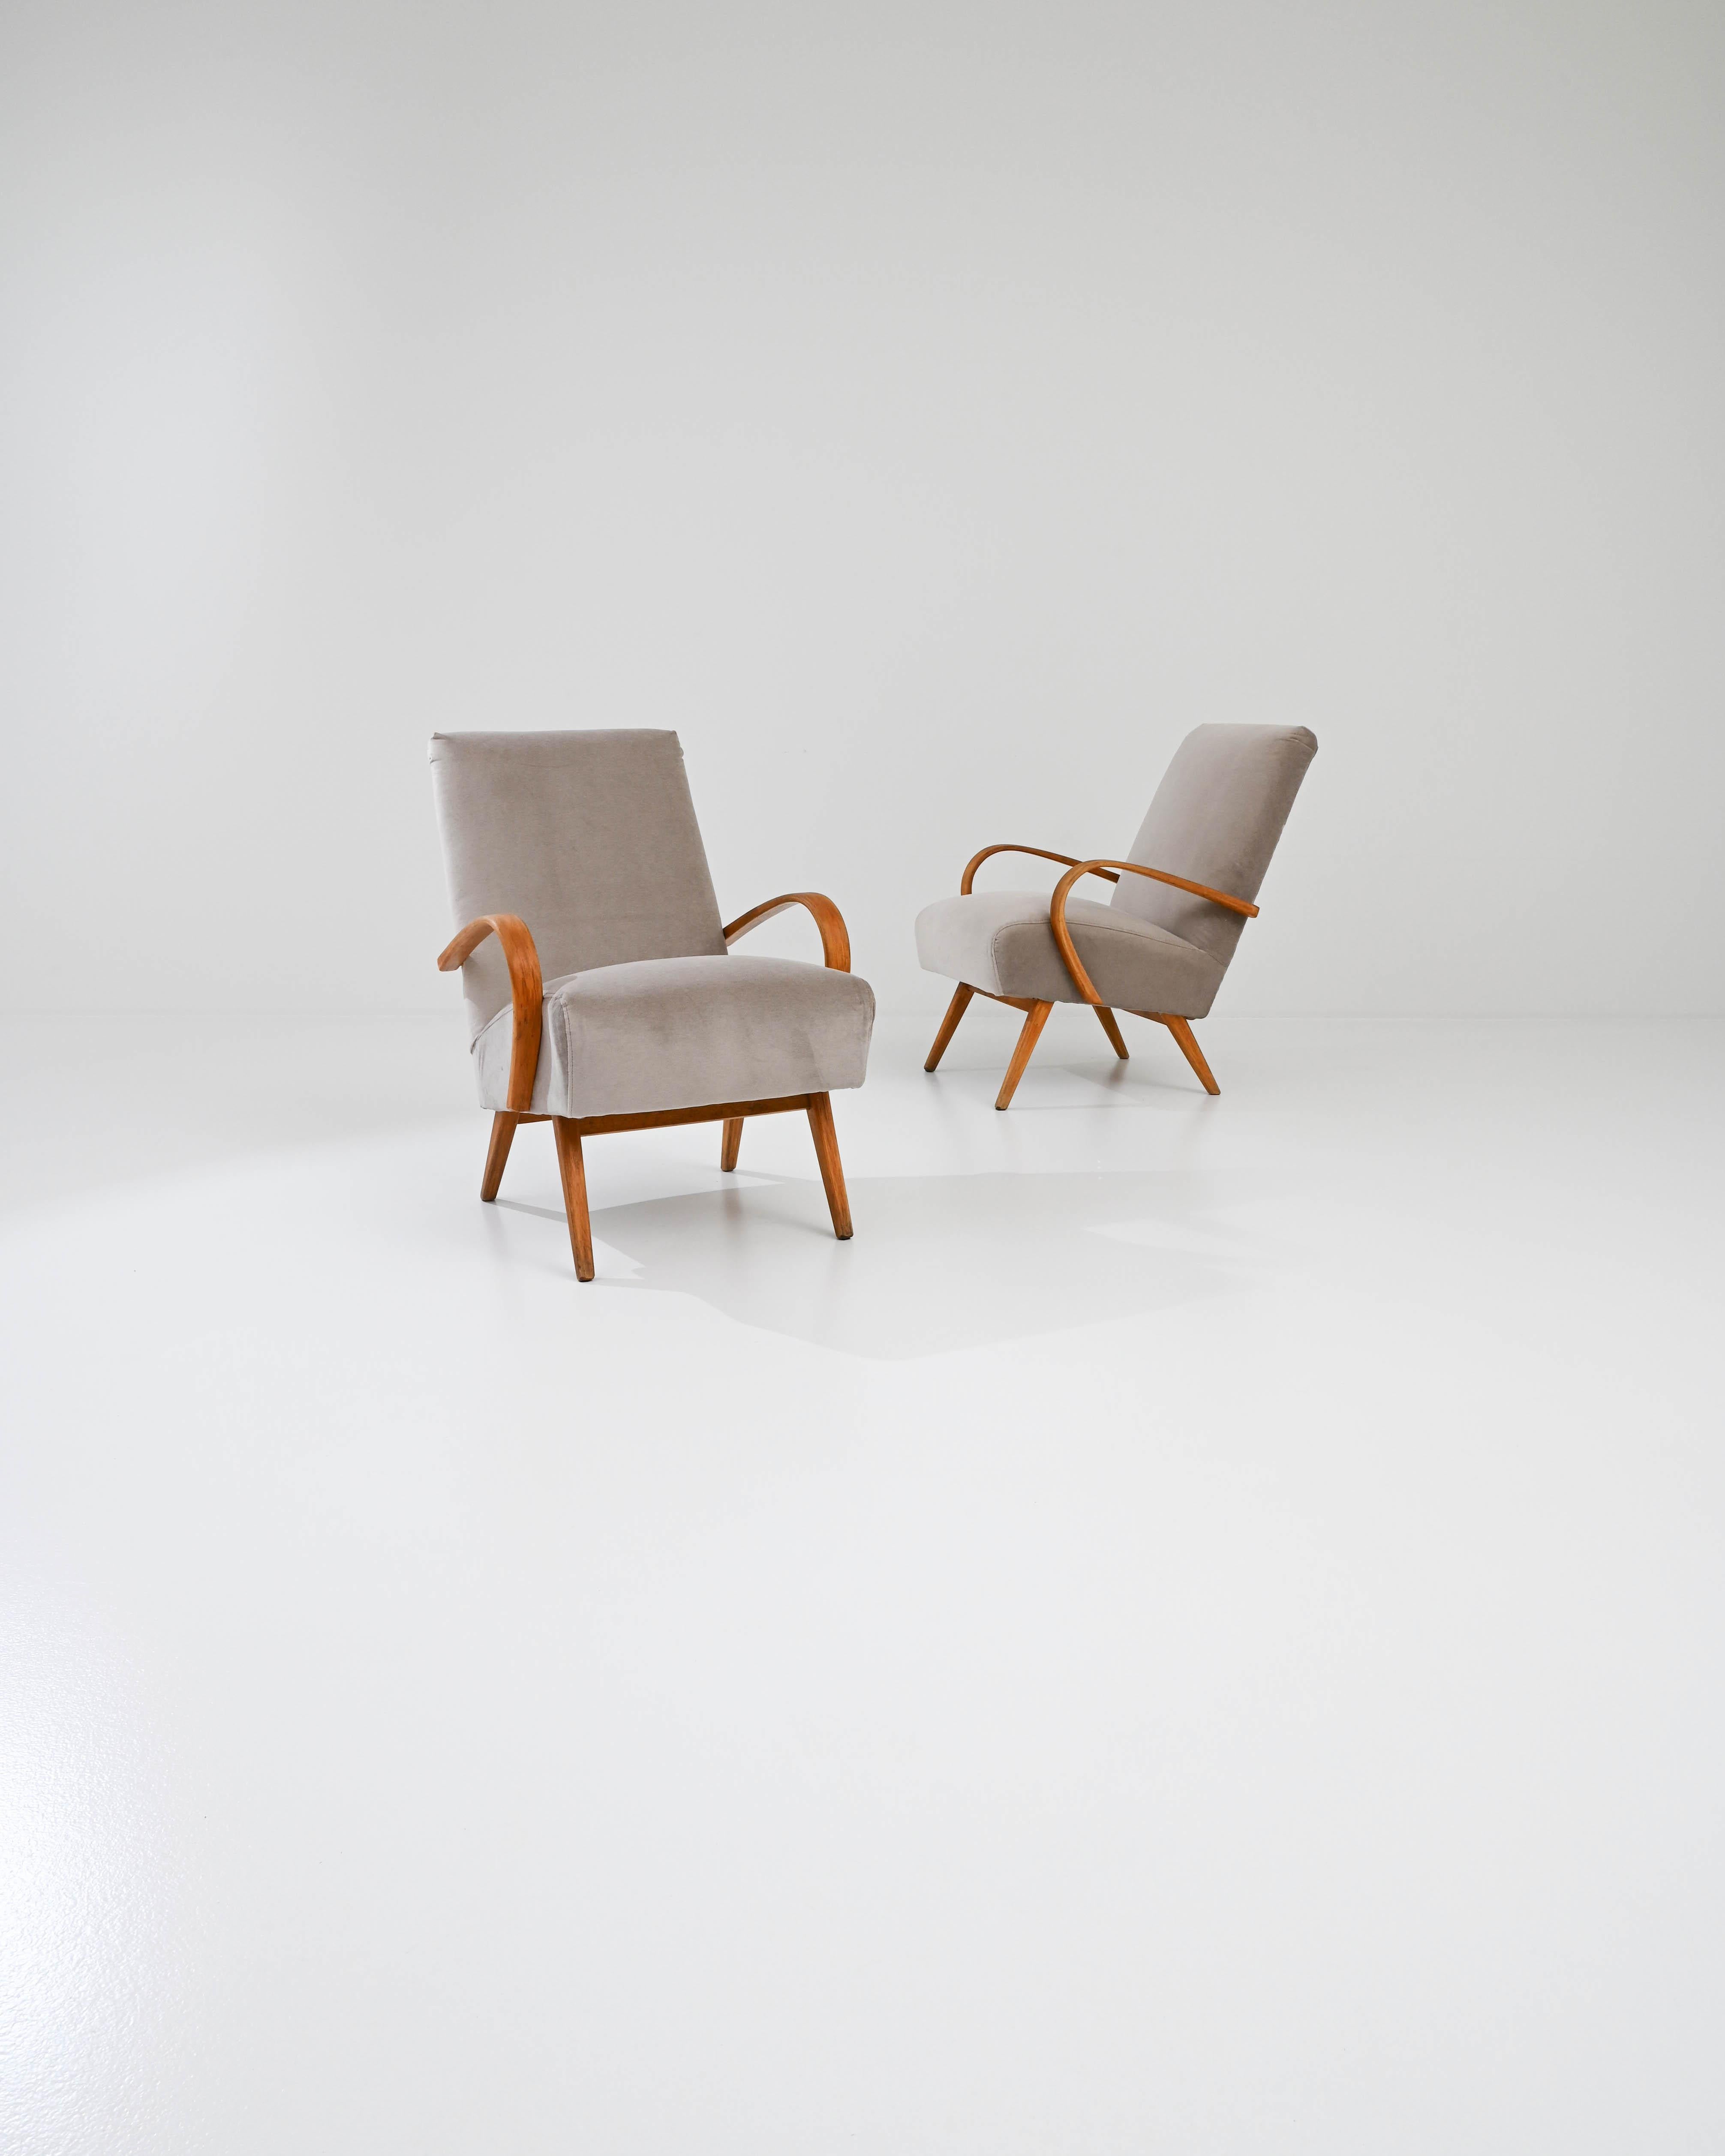 Fabriquée dans l'ancienne Tchécoslovaquie, cette paire de fauteuils en bois courbé datant d'environ 1950 a été retapissée avec un tissu neutre actualisé. Le revêtement velouté a été choisi pour compléter l'élégance vintage du cadre en bois dur noir.